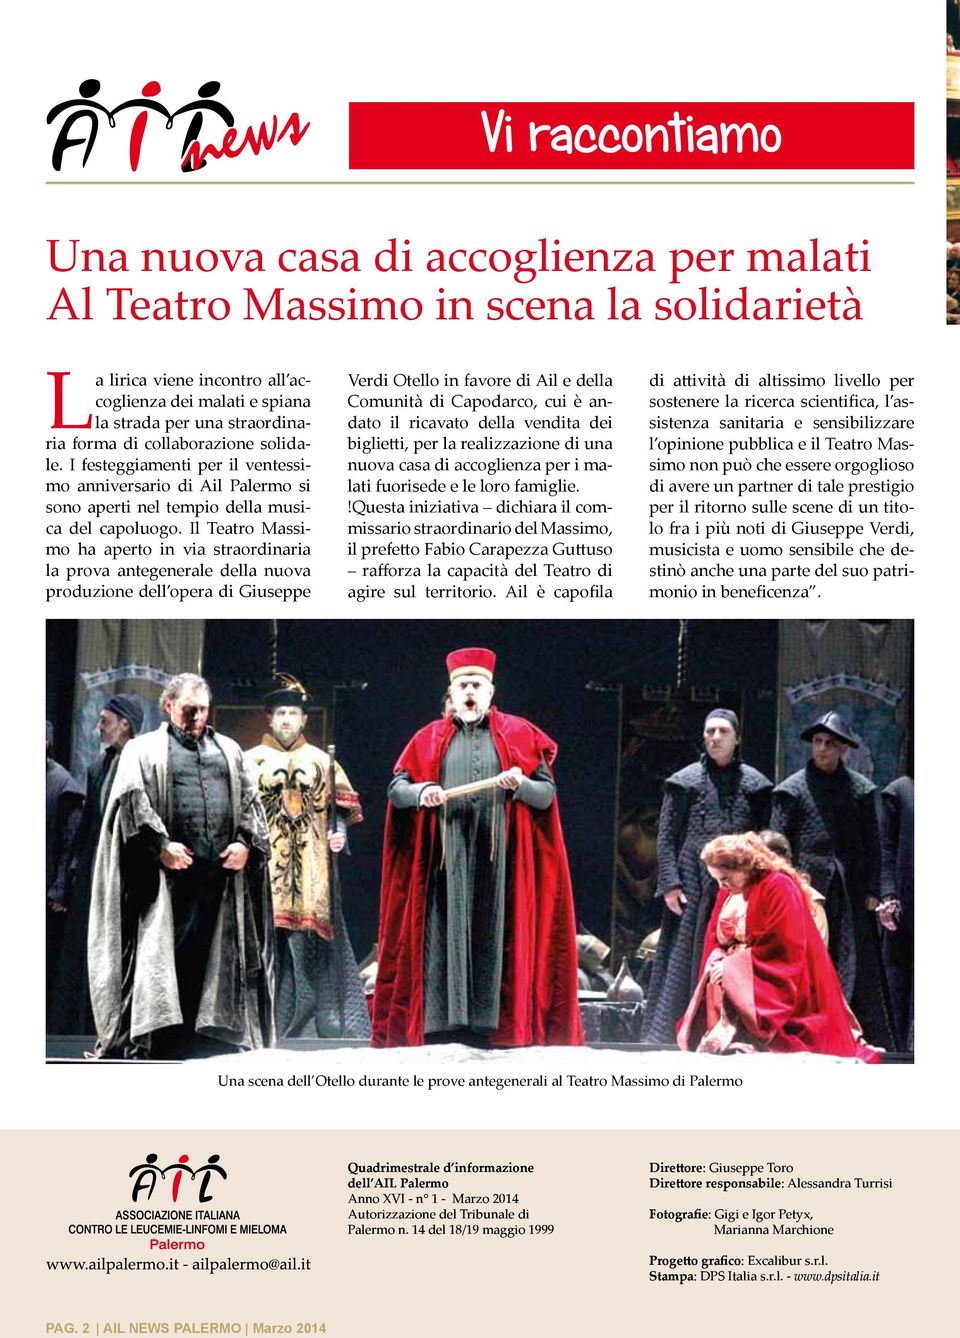 Il Teatro Massimo ha aperto in via straordinaria la prova antegenerale della nuova produzione dell opera di Giuseppe Verdi Otello in favore di Ail e della Comunità di Capodarco, cui è andato il